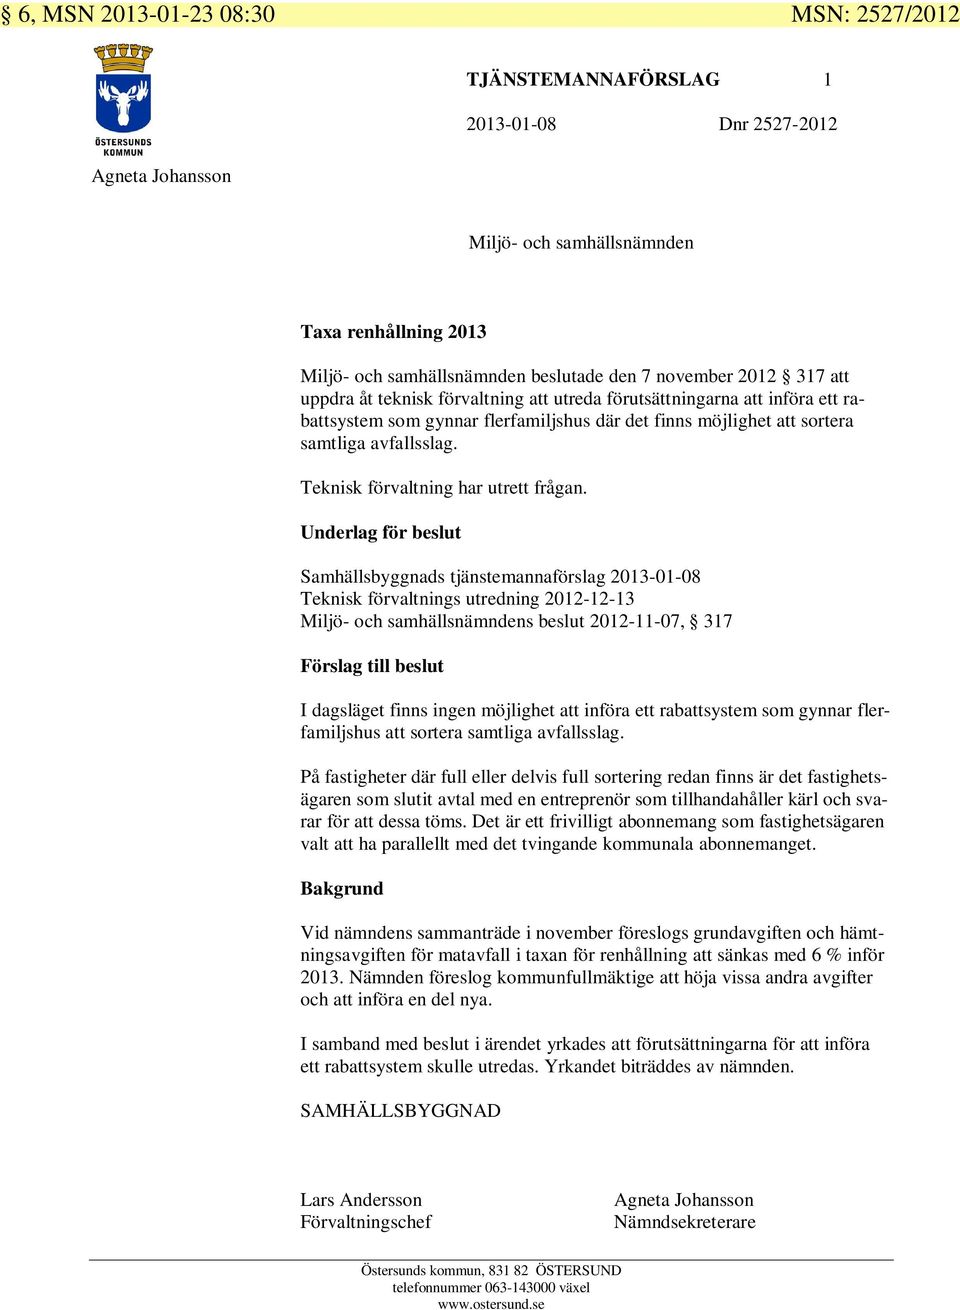 Underlag för beslut Samhällsbyggnads tjänstemannaförslag 2013-01-08 Teknisk förvaltnings utredning 2012-12-13 s beslut 2012-11-07, 317 Förslag till beslut I dagsläget finns ingen möjlighet att införa